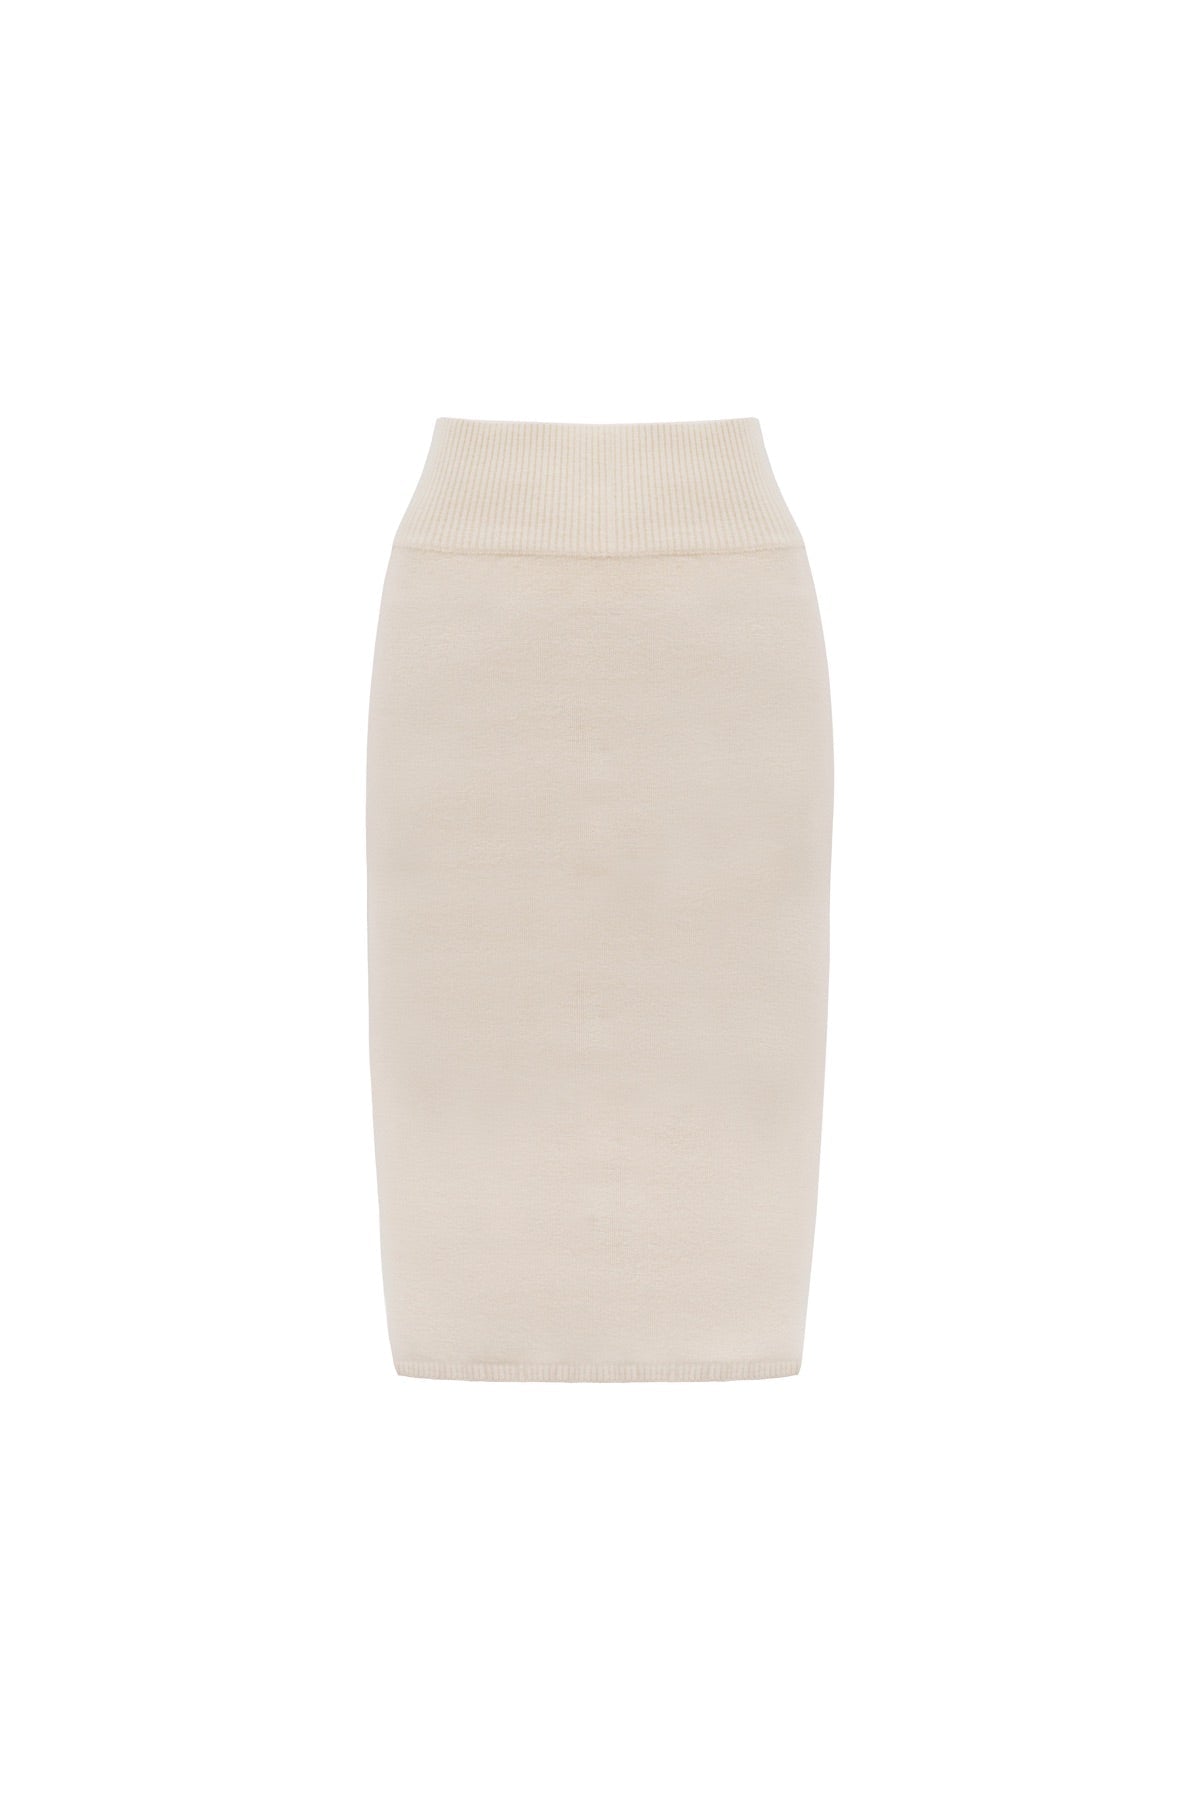 APPAREL - Halcyon Skirt (Bone)